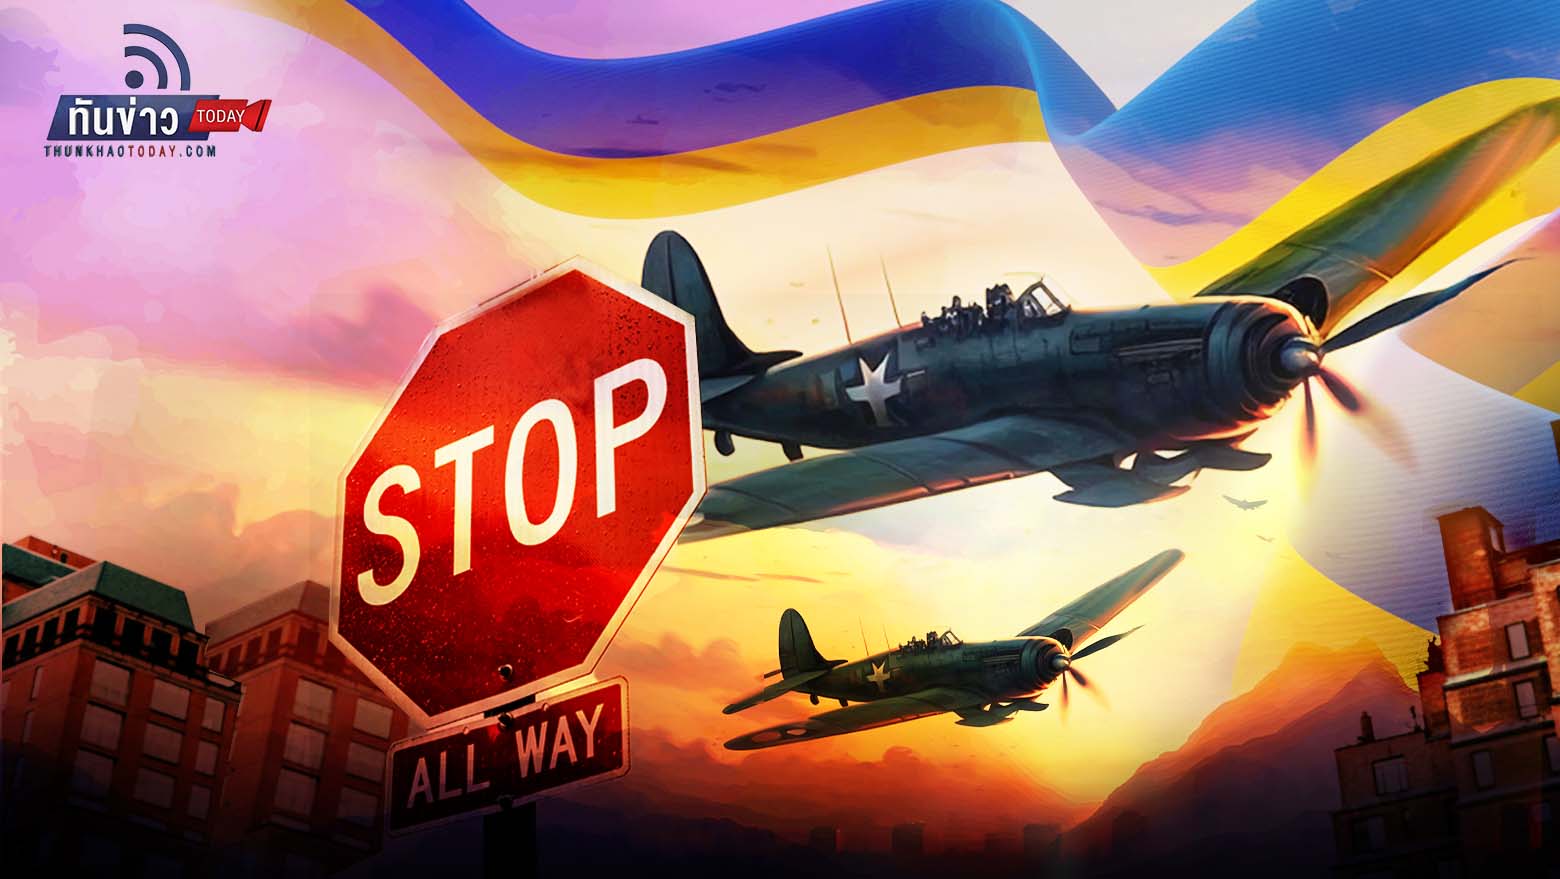 พันธมิตรยูเครนปฏิเสธส่งเครื่องบินรบช่วยเหลือ หวั่นสงครามบานปลาย